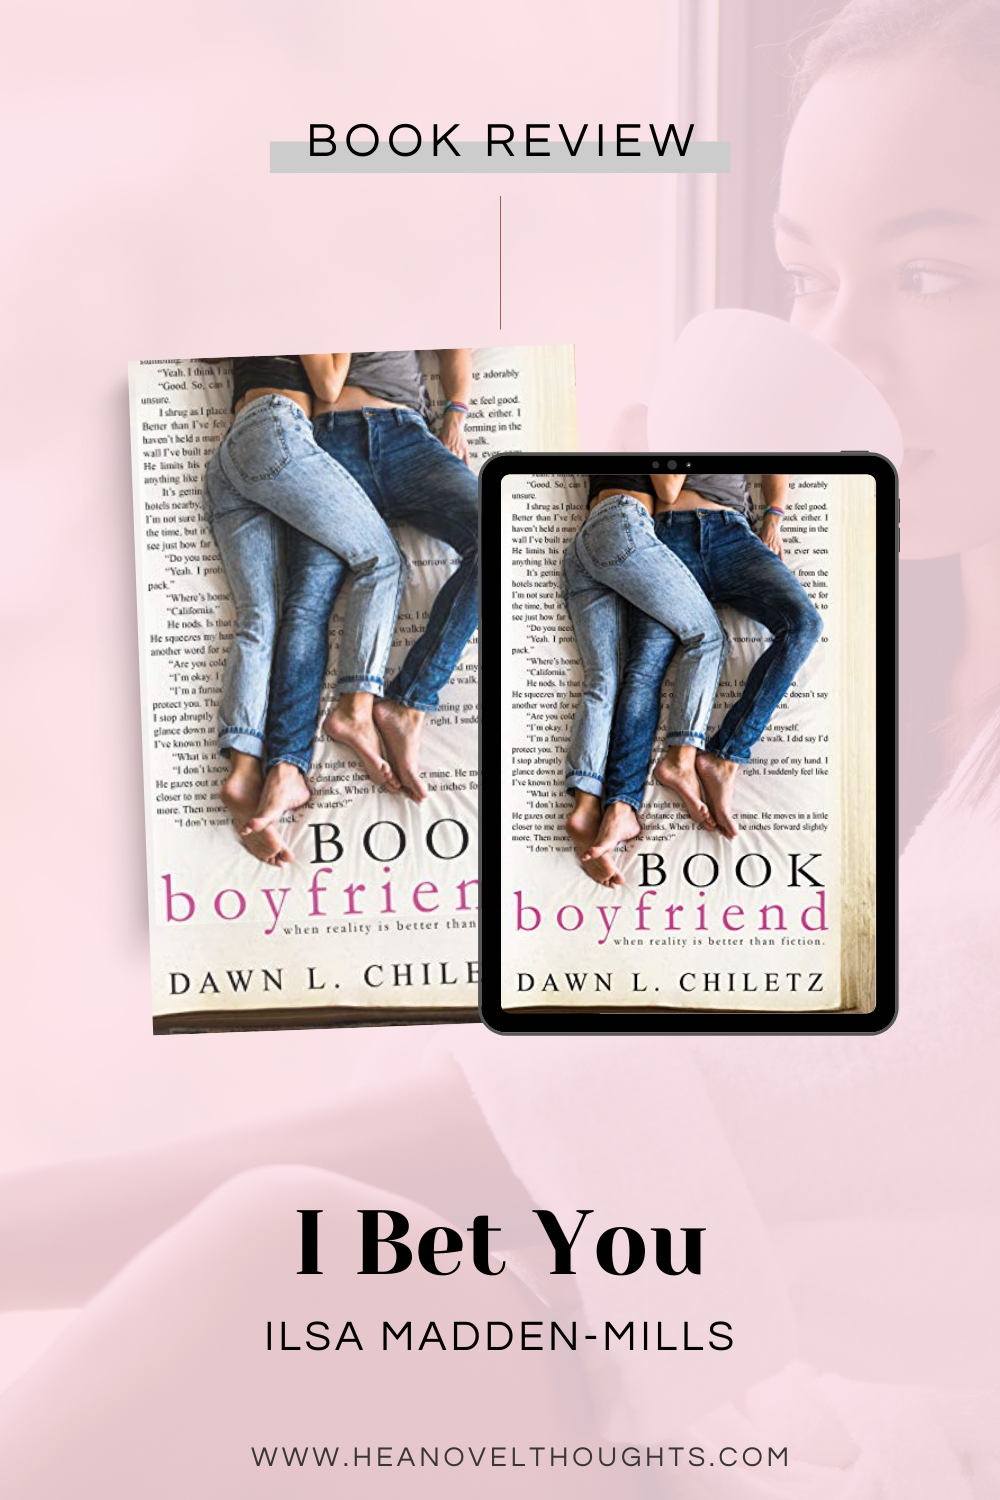 Book Boyfriend by Dawn L. Chiletz